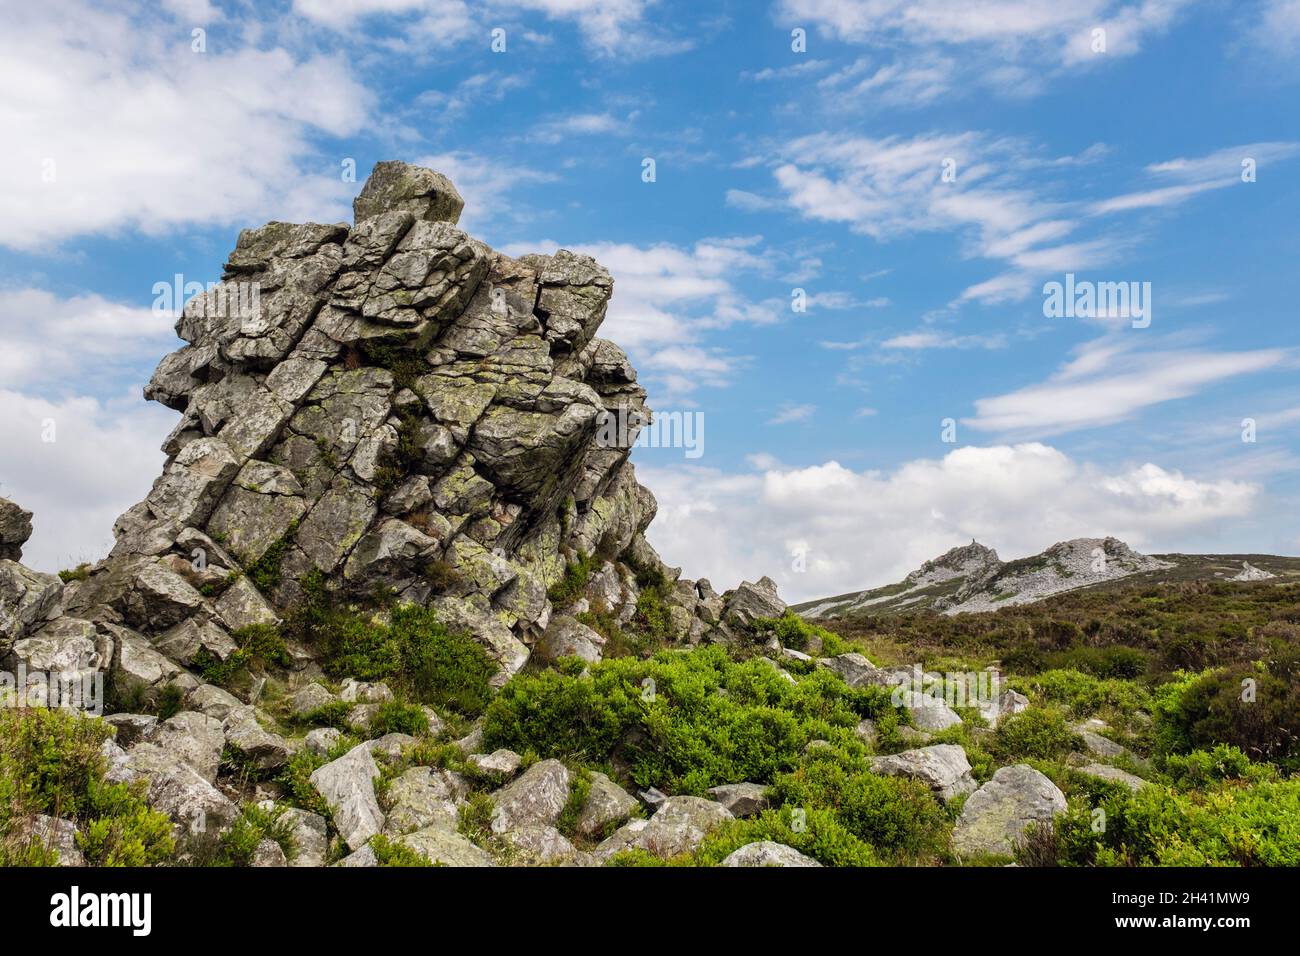 Affioramenti rocciosi di quarzite lungo la cima della collina di Stiperstones. Shropshire, Inghilterra, Regno Unito, Gran Bretagna. La Stiperstones è una Riserva Naturale Nazionale Foto Stock